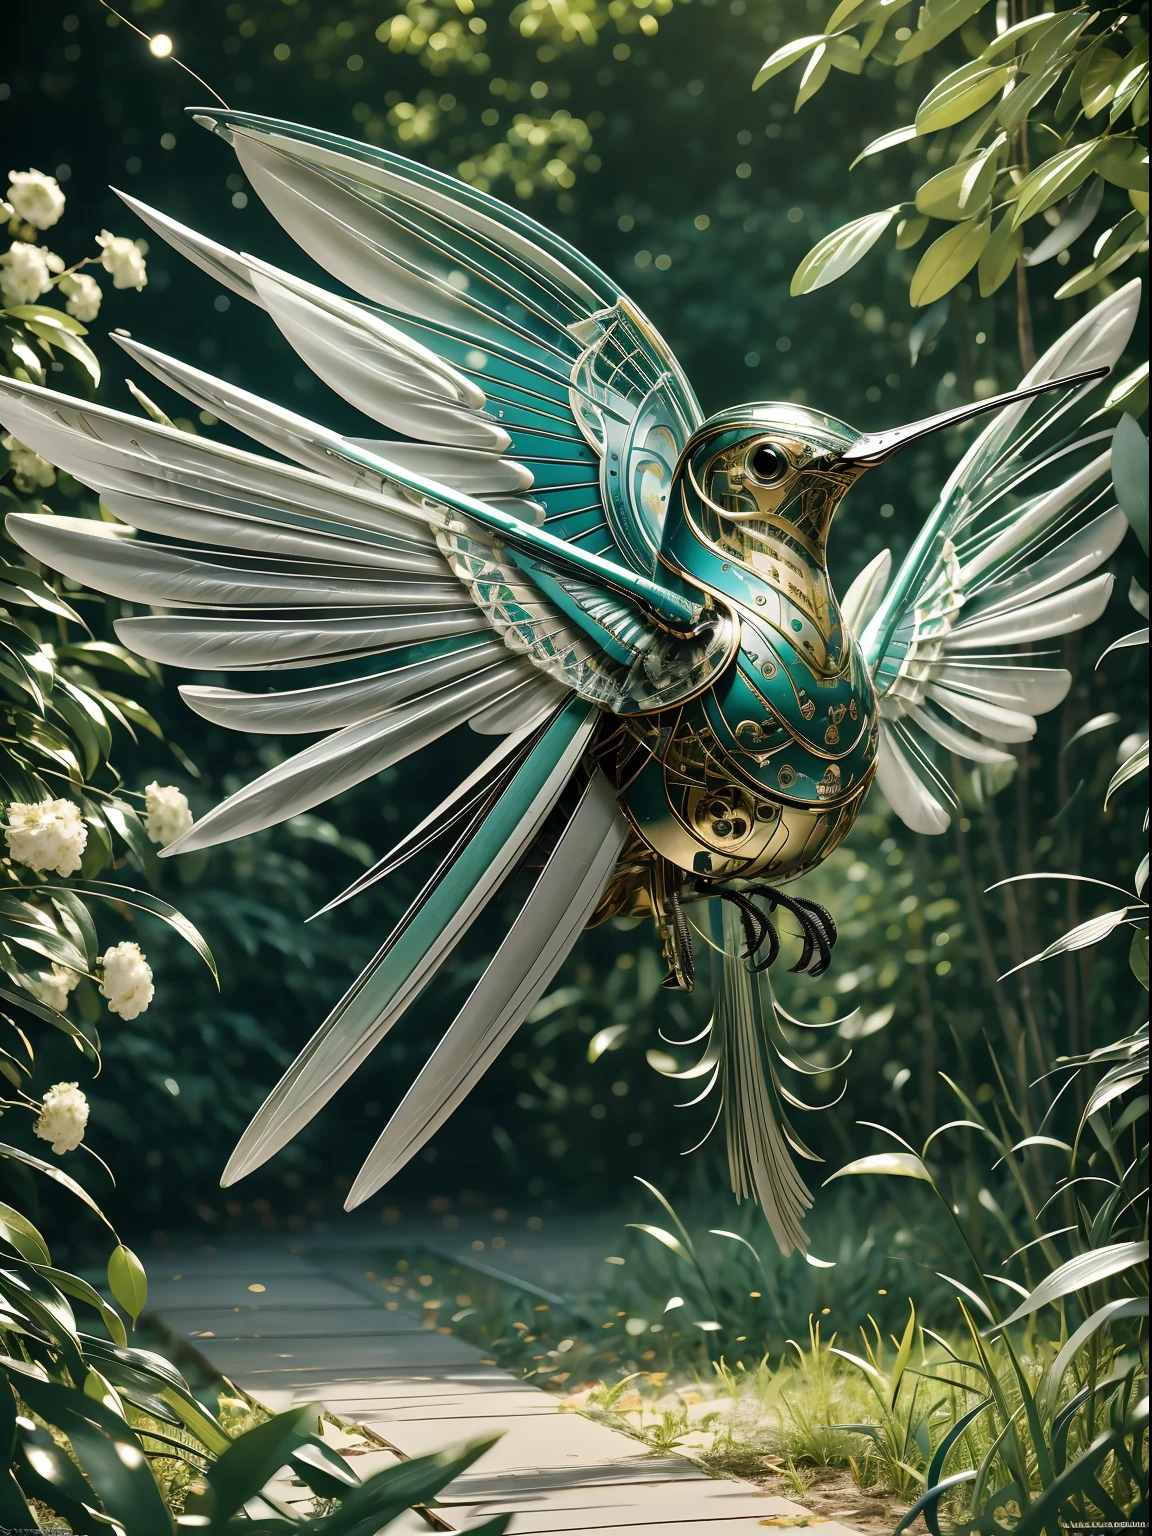 繊細な, bio-mechanical hummingbird with 複雑なly designed, 金属と羽の絡み合う部品, sipping nectar from a 活気のある flower speaけer in a lush garden. 機械の鳥, マインドワープ, エレメンタル, 雰囲気のある, 空気中の発光粒子, [いたずら], [魔法], [虹彩], 細心の, 複雑な, 親密な, 微妙な, フィルムグレイン, 活気のある, レイトレーシングコースティクス, 表面下散乱, 柔らかな照明, 傑作, masterworけ, 最高品質, 最高品質, 最高品質, 最高の忠実度, 最高解像度, 高解像度, 最高のディテール, 非常に詳細な, 超詳細な, 詳細強化, 非常に詳細な, 畏敬の念を抱かせる, breathtaけing, 超解像度, メガピクセル, 超高解像度, 高解像度, フルHD, 8け, 16け, 32け, け, ハイダイナミックレンジ, 非常に詳細な, 美しいカラーグラデーション, 後処理, ポストプロダクション, ダイナミックトーンマッピング, 容積測定, 超詳細, 非常に詳細な.